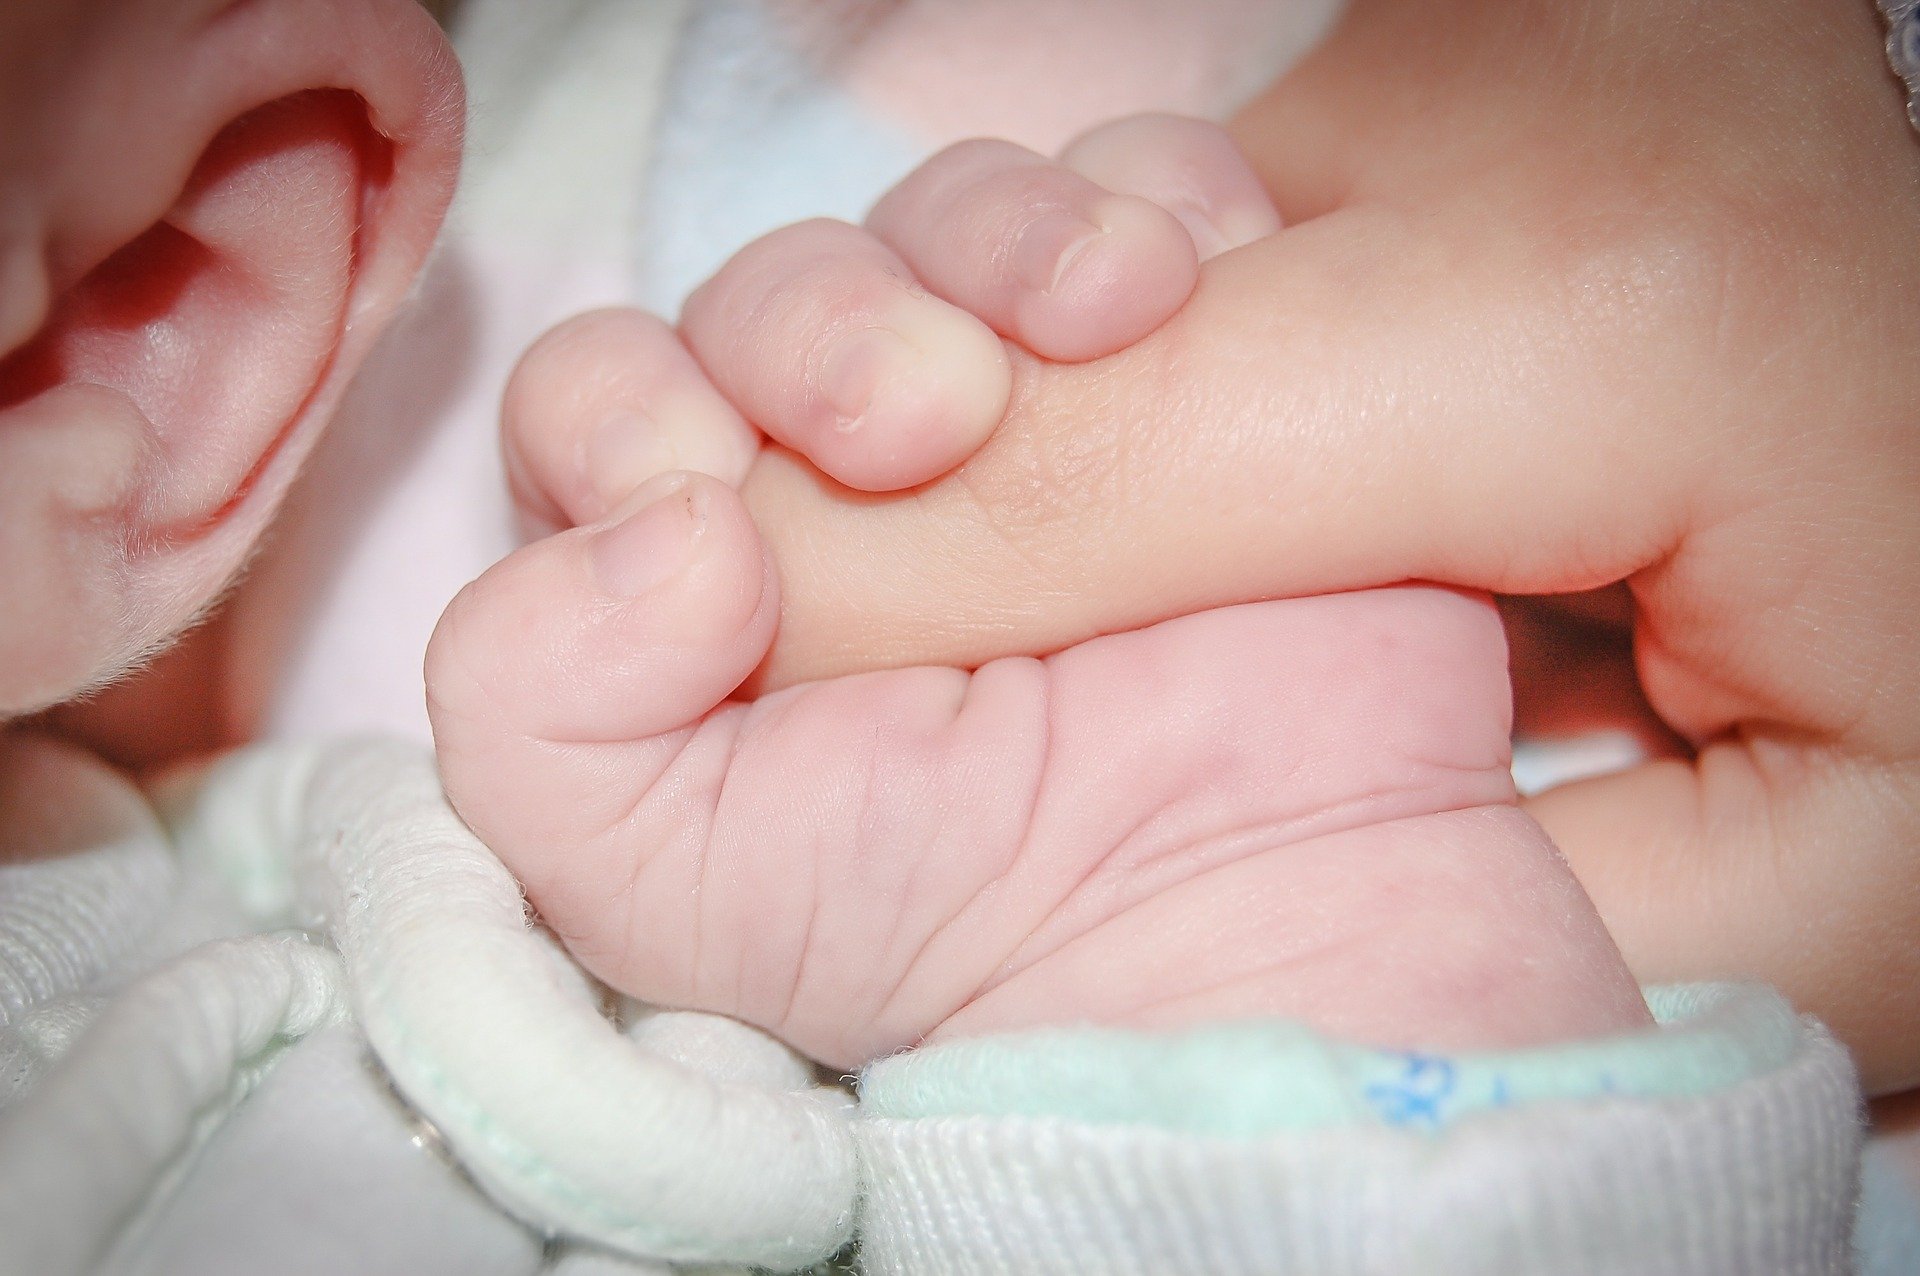 O femeie infectată cu Covid-19, intubată de o lună, a dat naștere unui copil